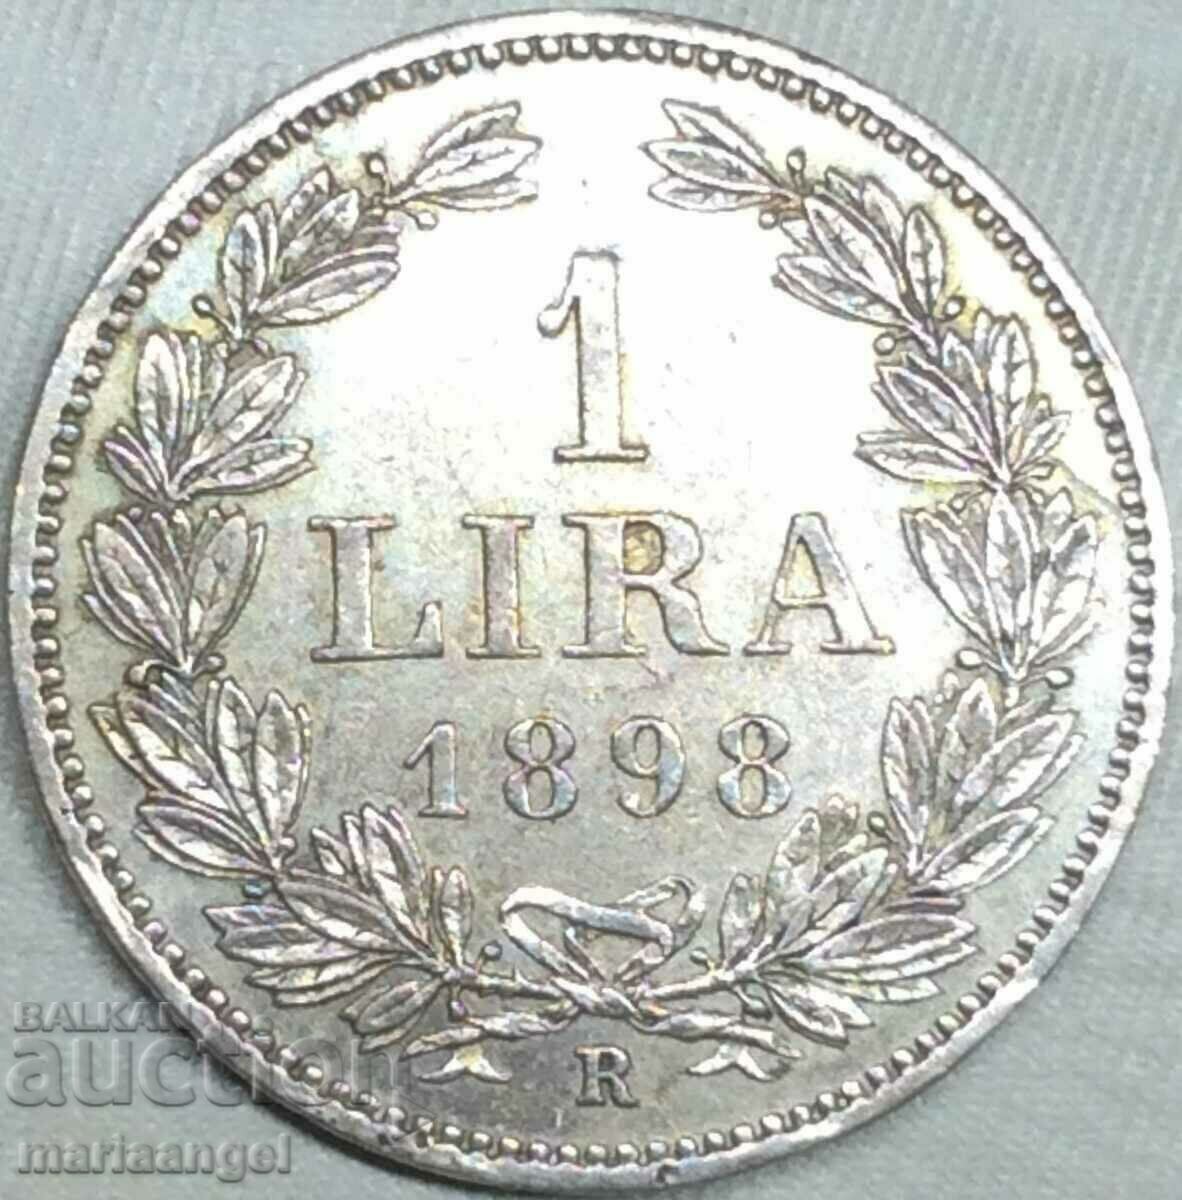 San Marino (Eroare - San MarinI) 1 lira 1898 argint